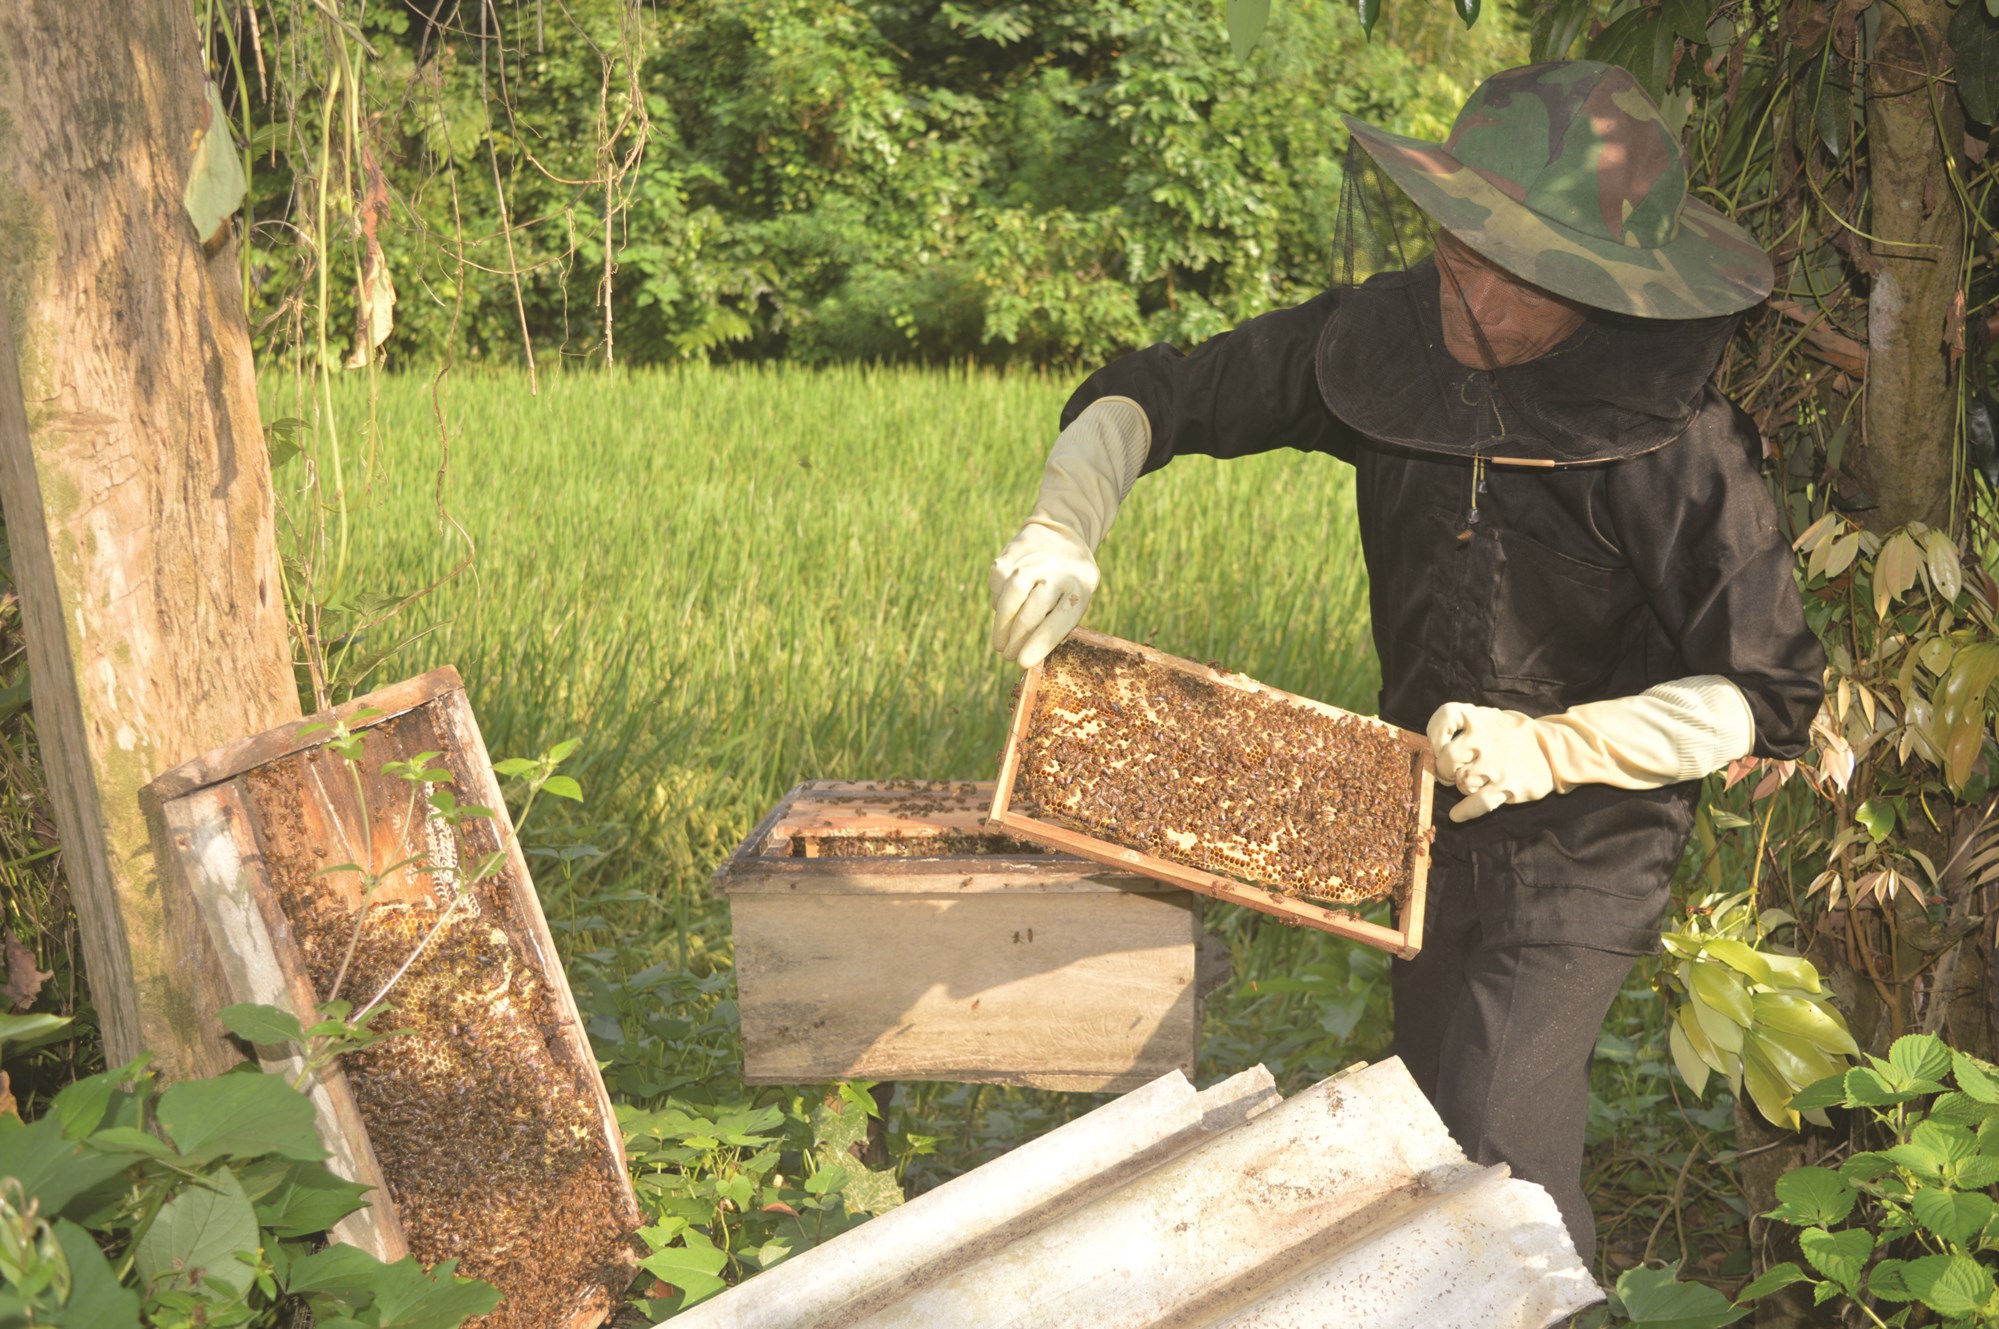 Ông Dương Minh Tọa kiểm tra đõ ong để chuẩn bị lấy mật.